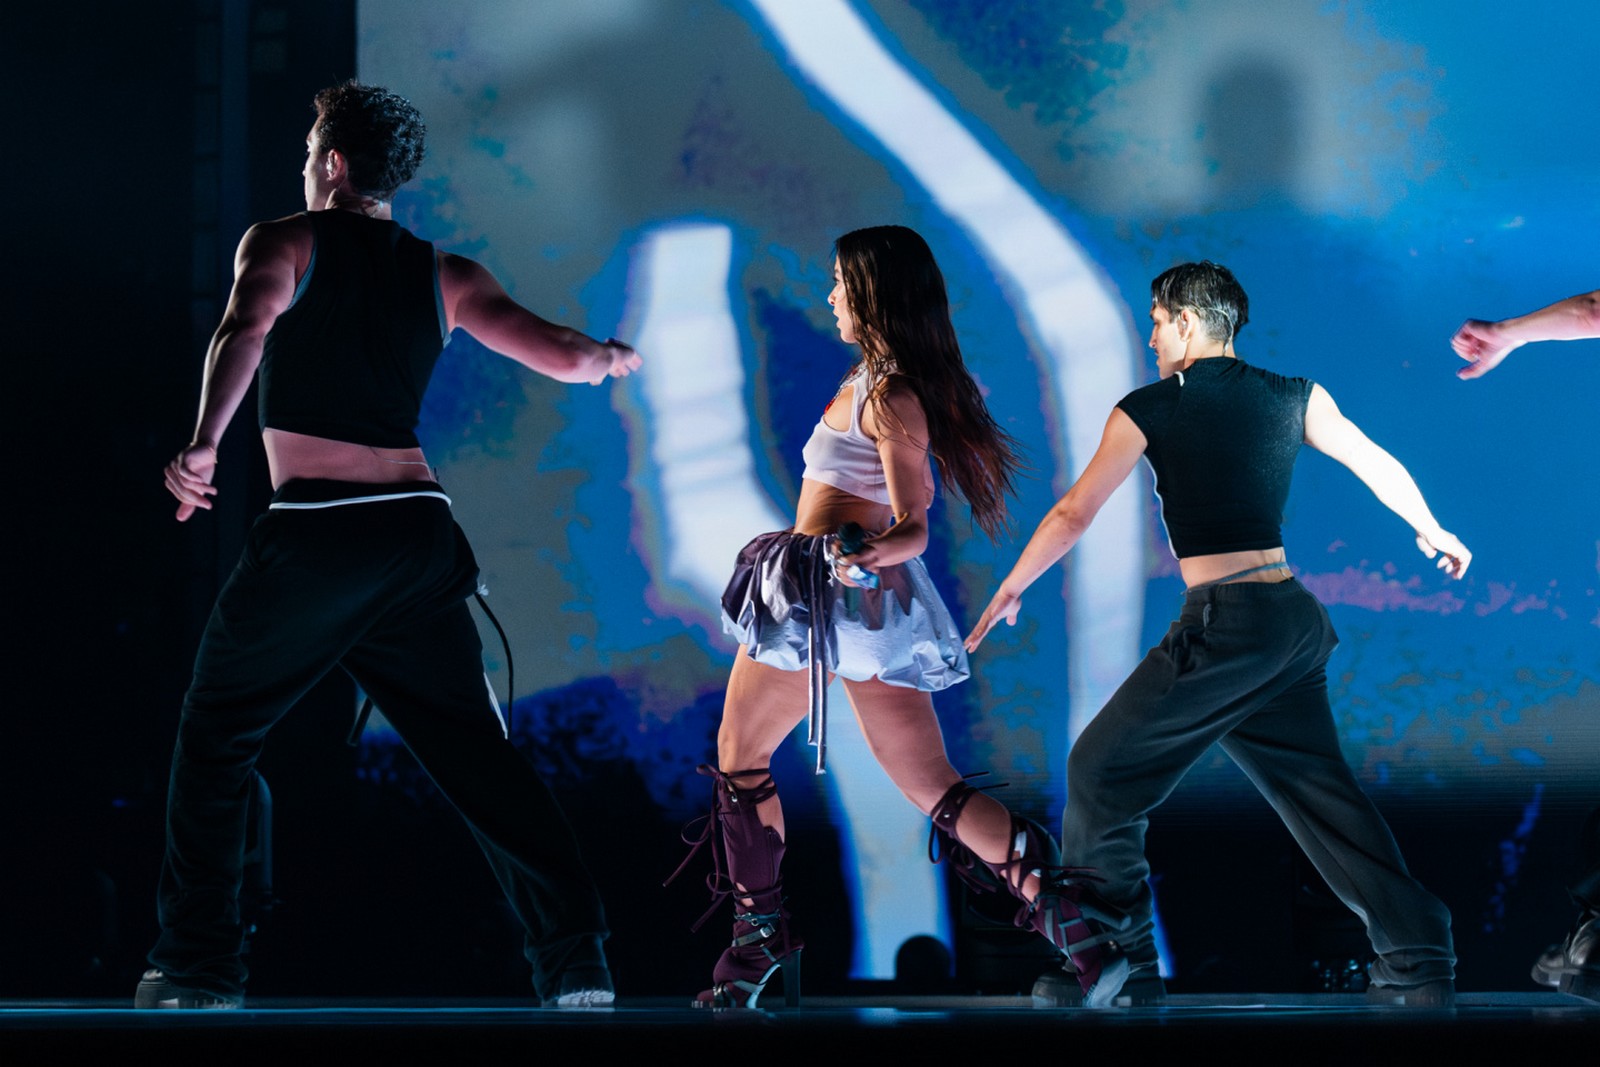 eurovision: ευρωπαϊκή φρενίτιδα για τη σάττι - πρώτη με χαοτική διαφορά στις μετρήσεις των φαν